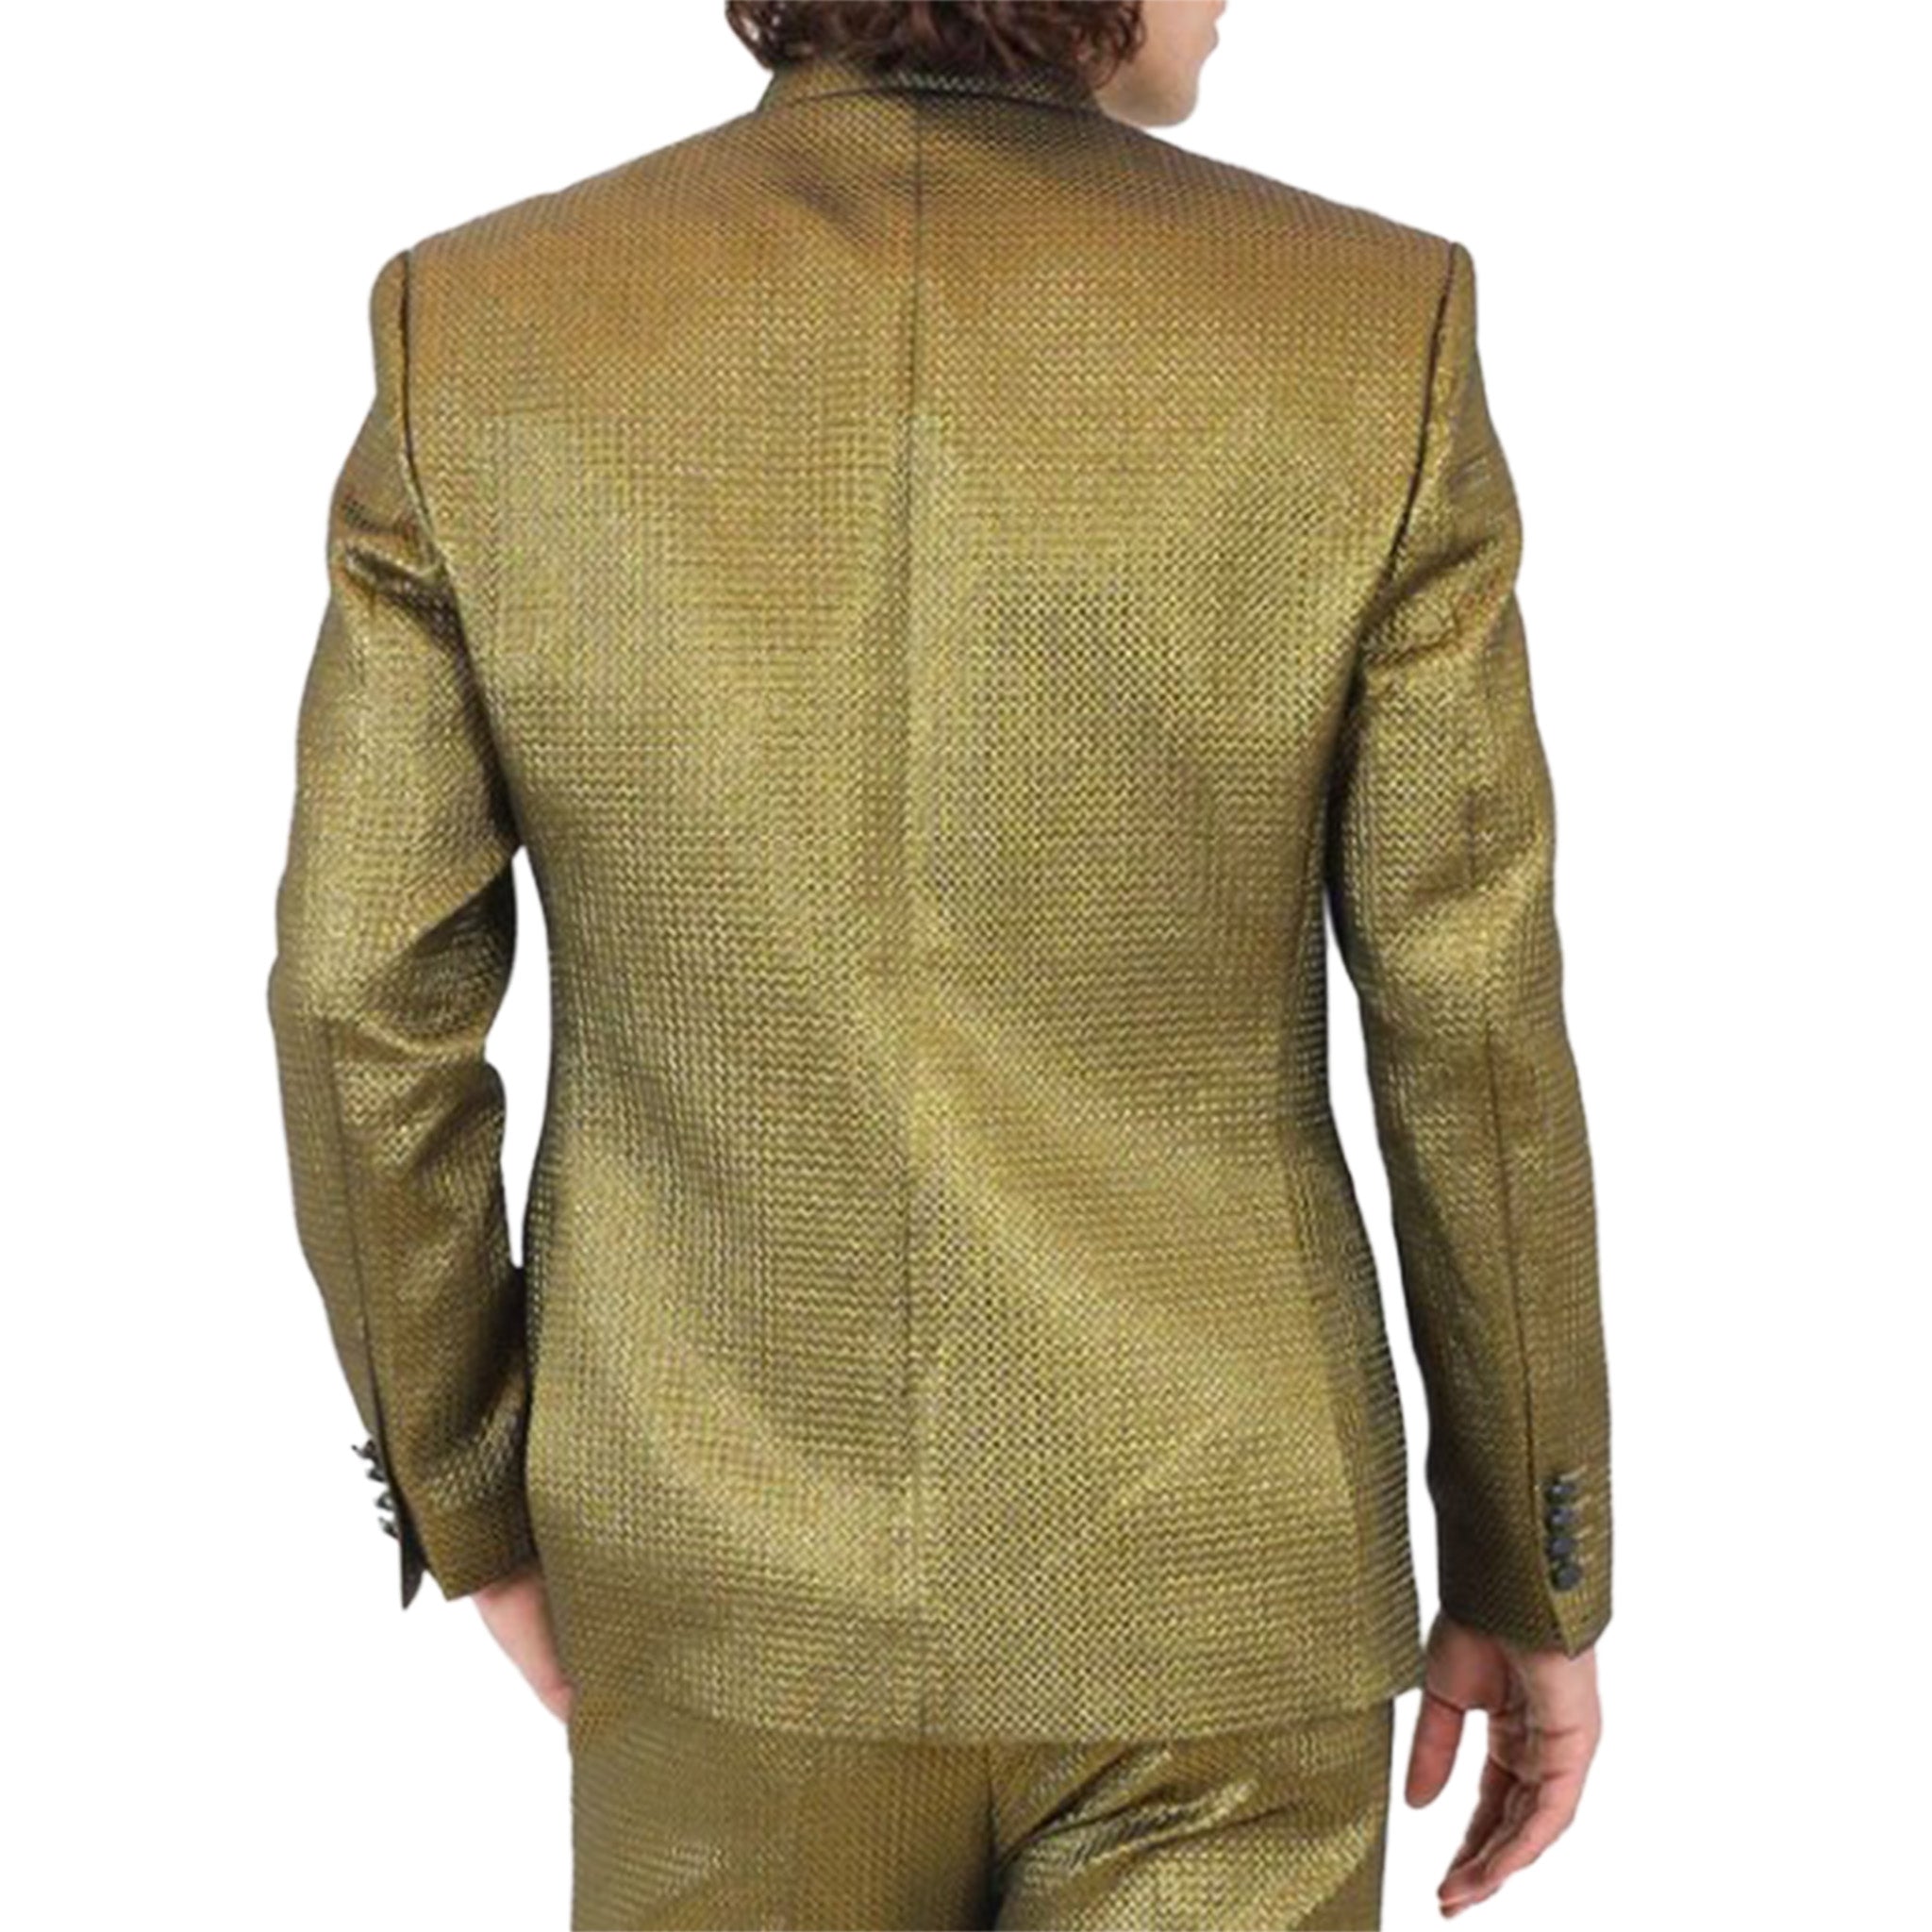 Gold Mandarin Collar Fashion Blazer